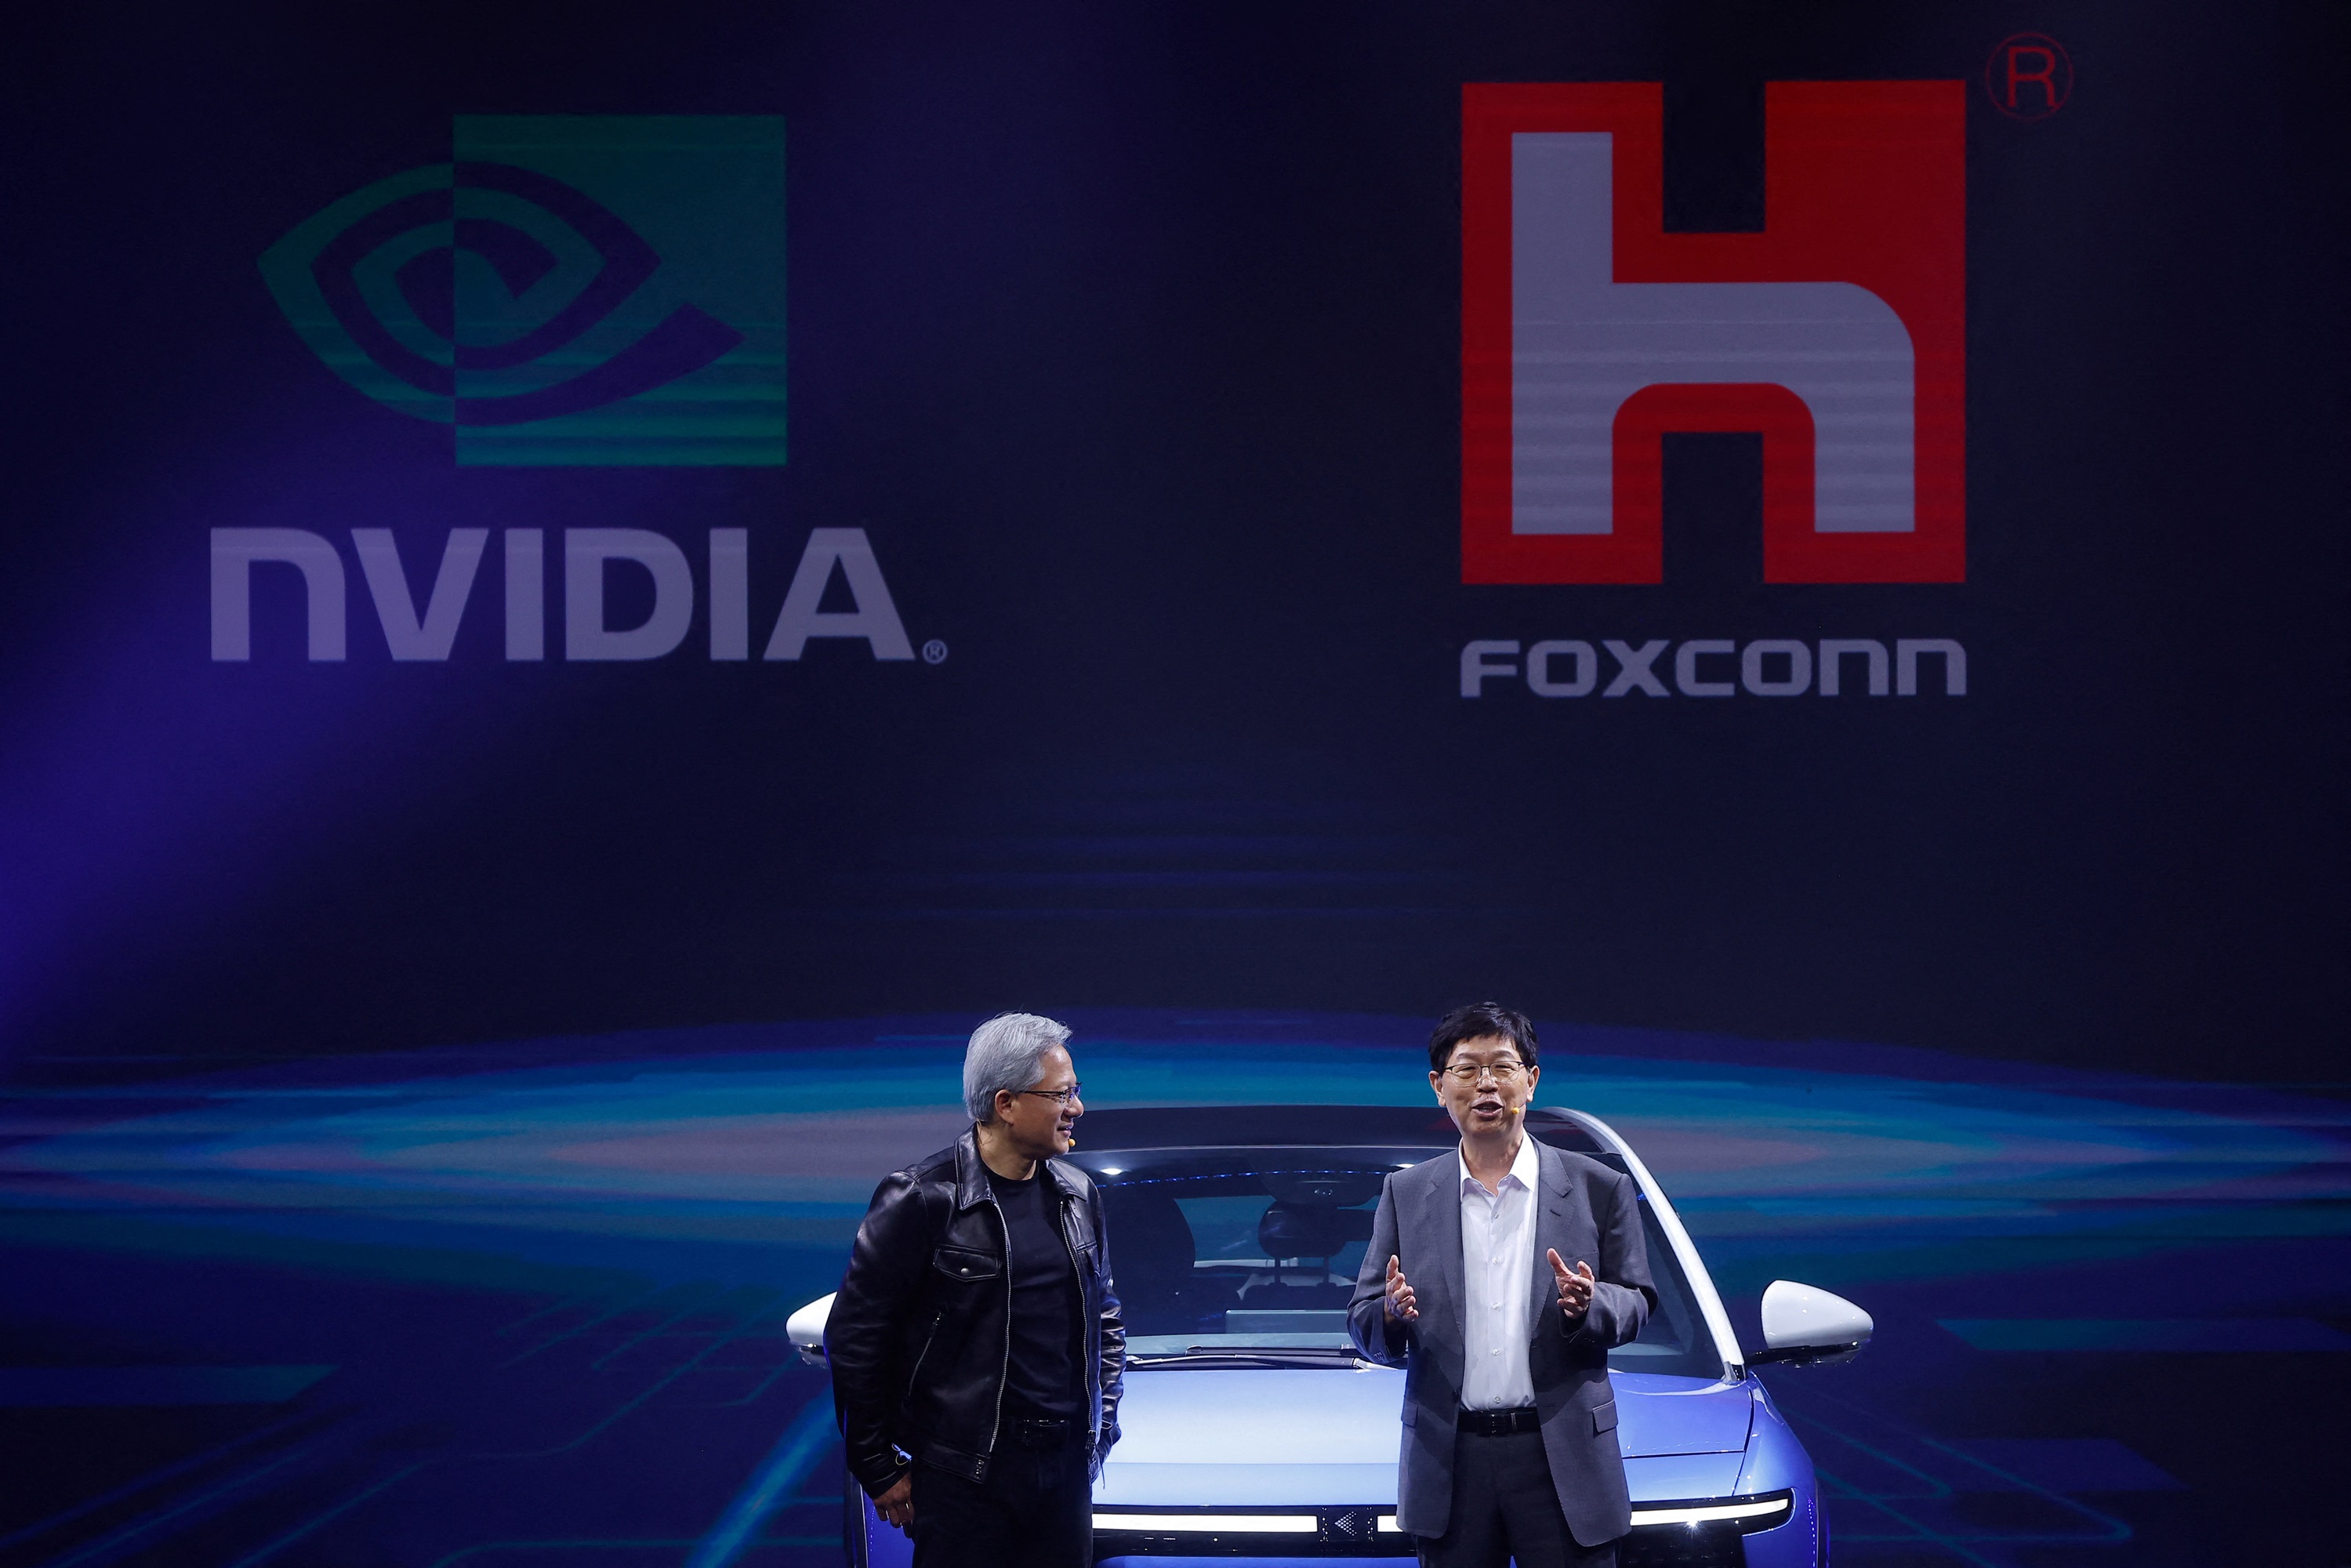 Foxconn und Nvidia kündigten die Gründung von "Fabriken für künstliche Intelligenz" an